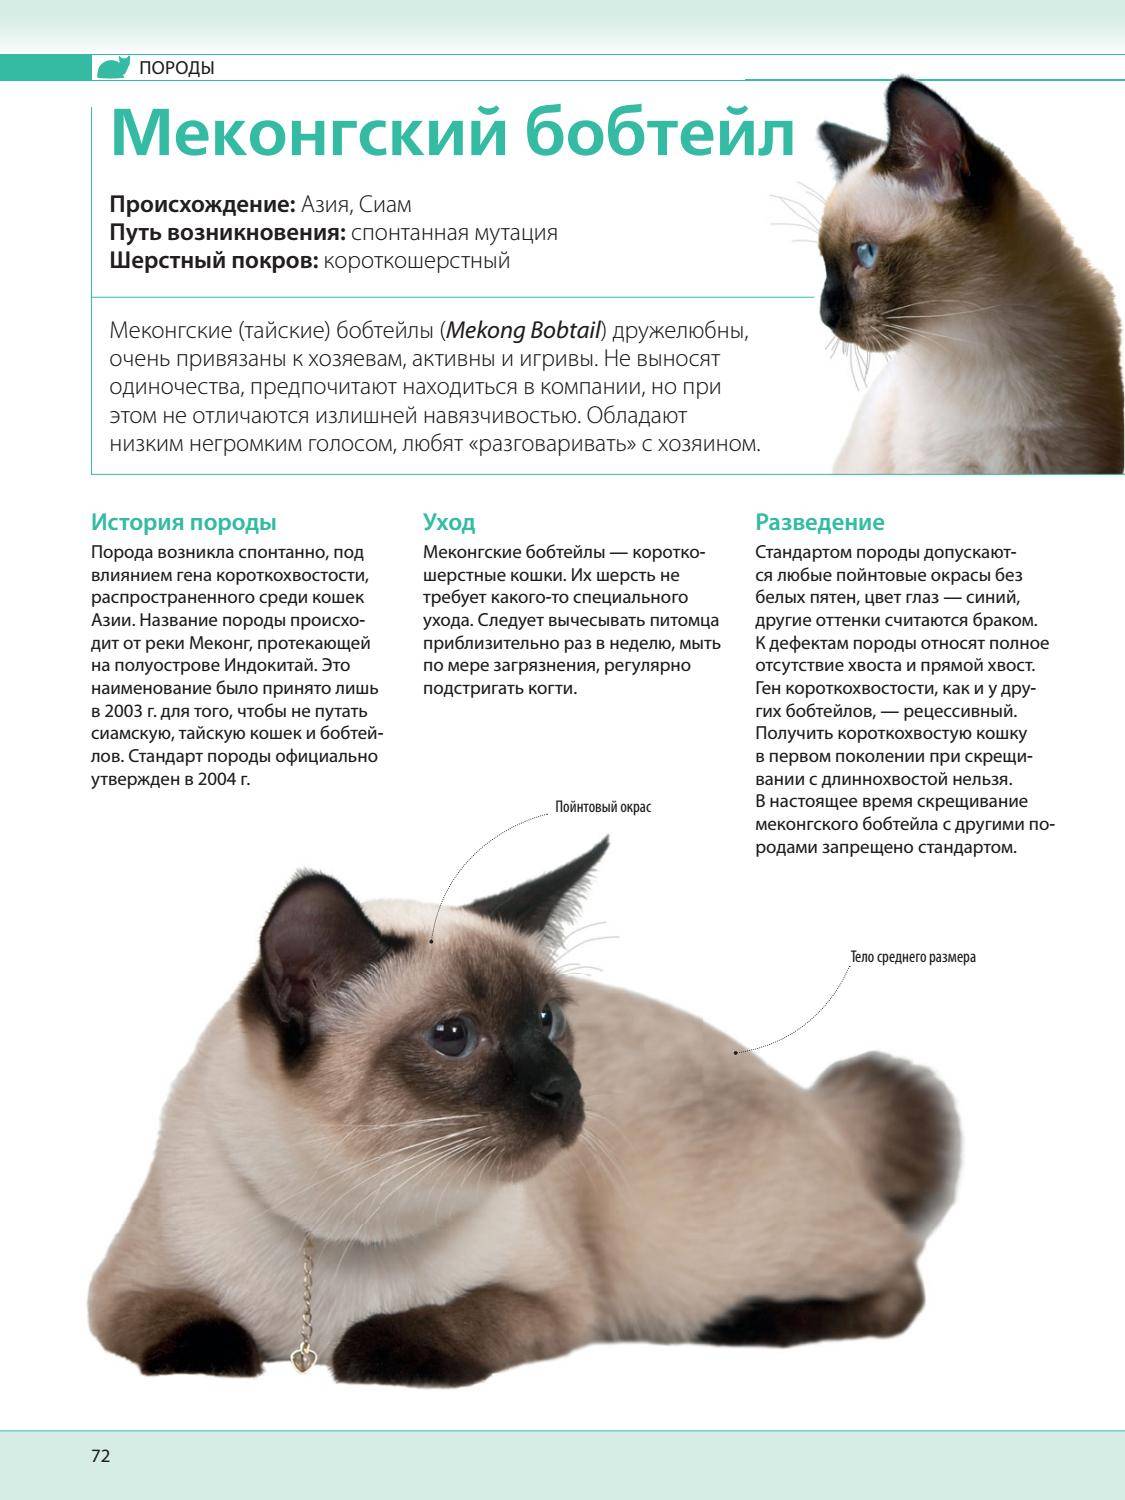 Тайская кошка: стандарт породы с фото, описание характера, особенности ухода